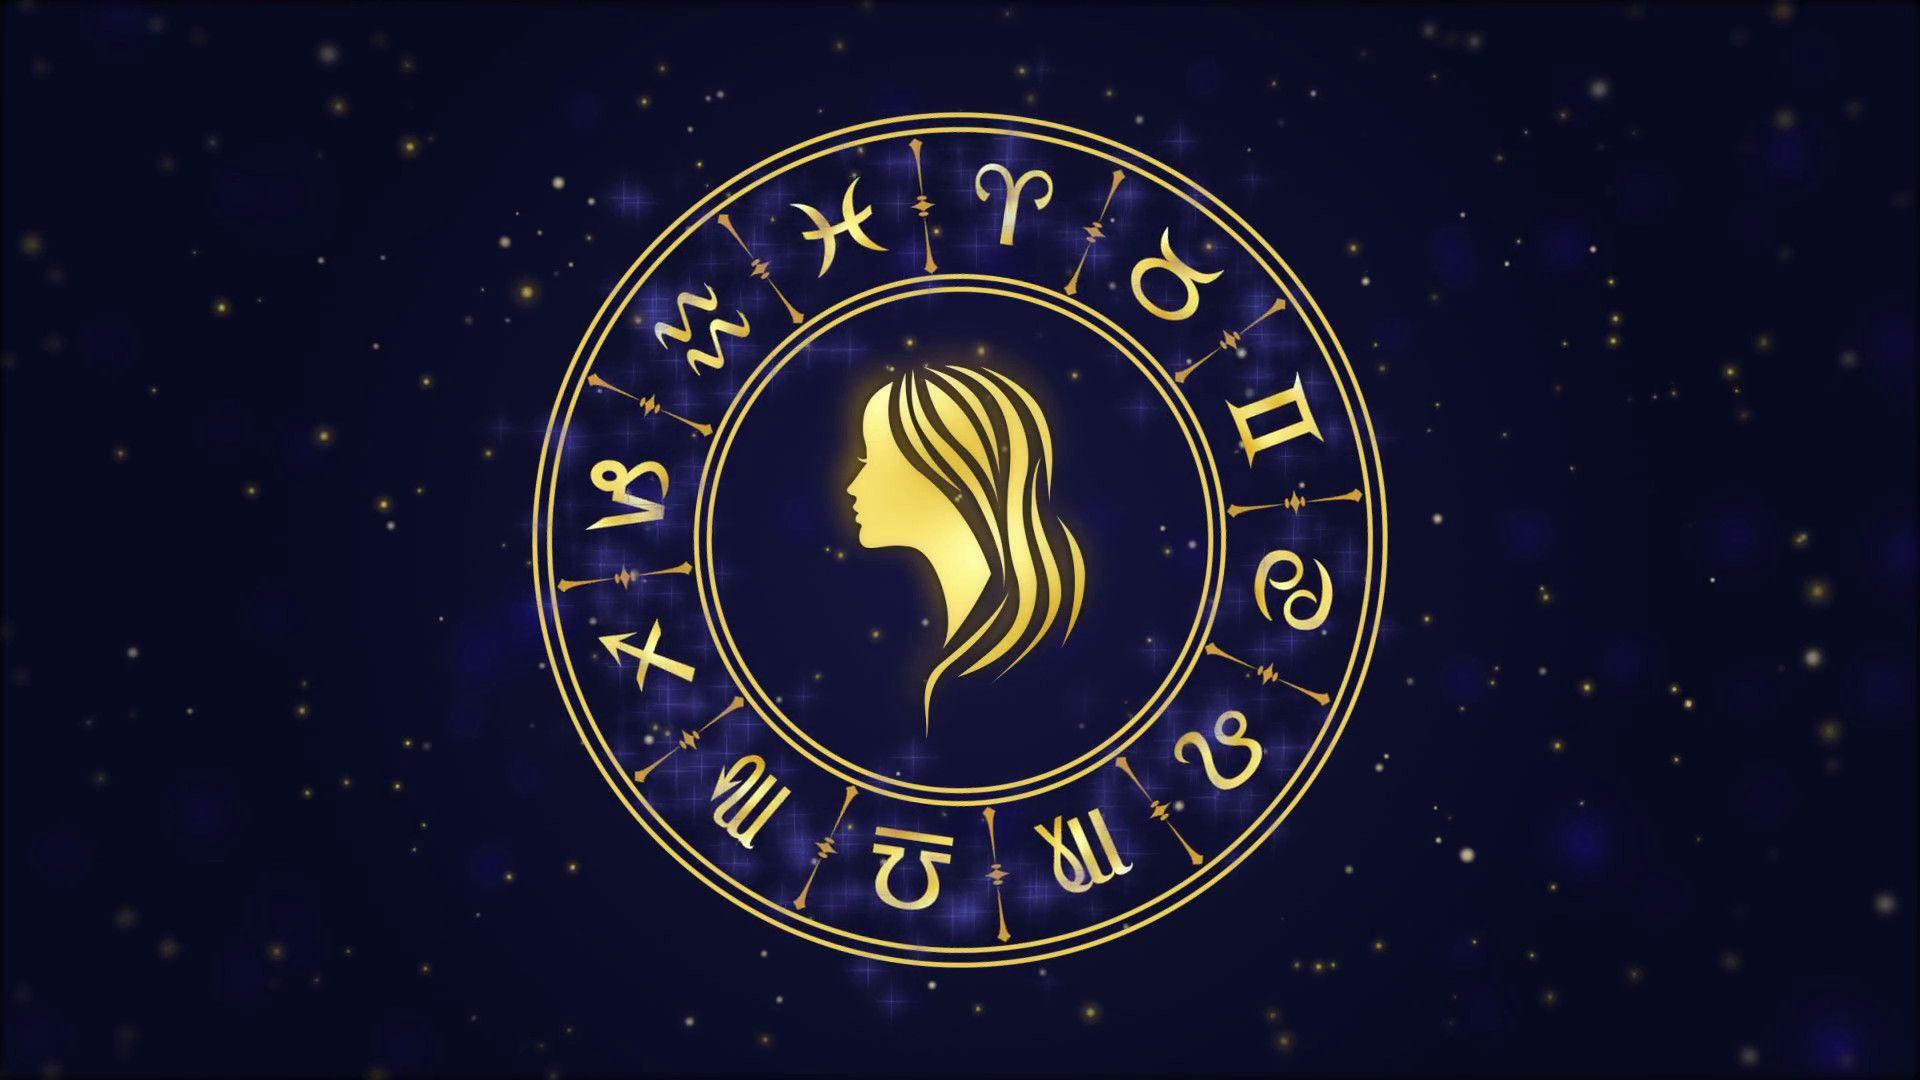 Virgo зодиак. Знаки зодиака "Дева". Virgo знак зодиака. Обои знаки зодиака. Знаки зодиака на синем фоне.